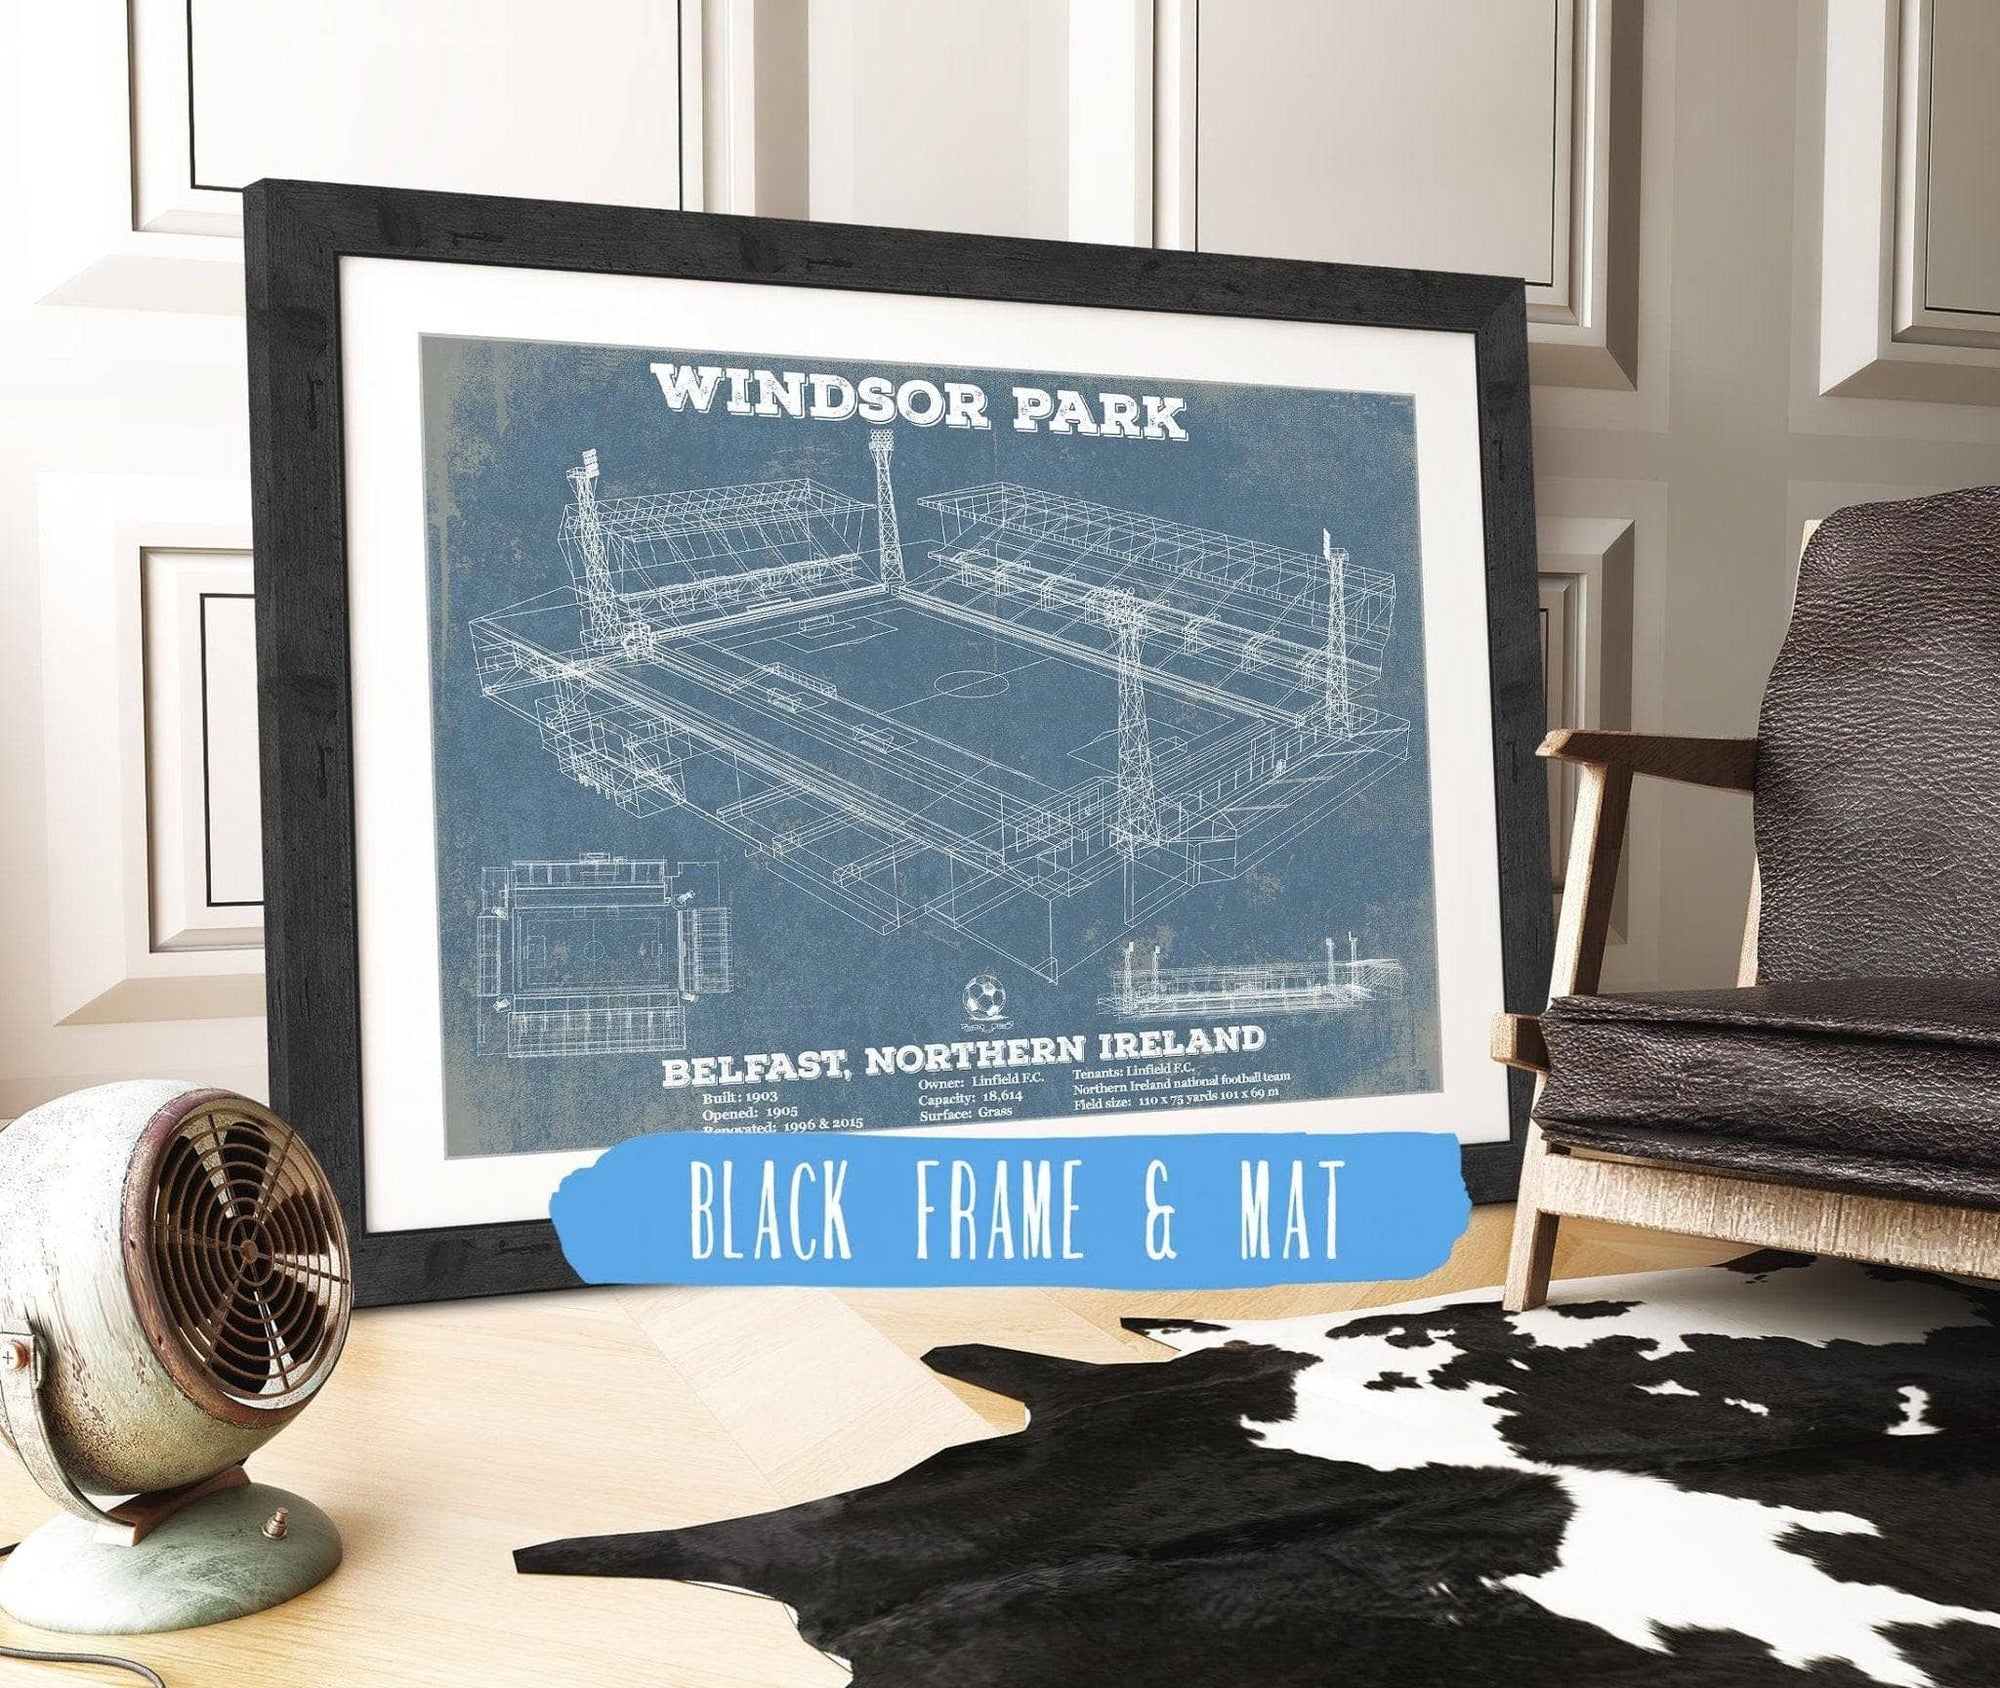 Cutler West Soccer Collection 14" x 11" / Black Frame & Mat Linfield F.C. - Vintage Windsor Park North Ireland Soccer Print 813503375_7917